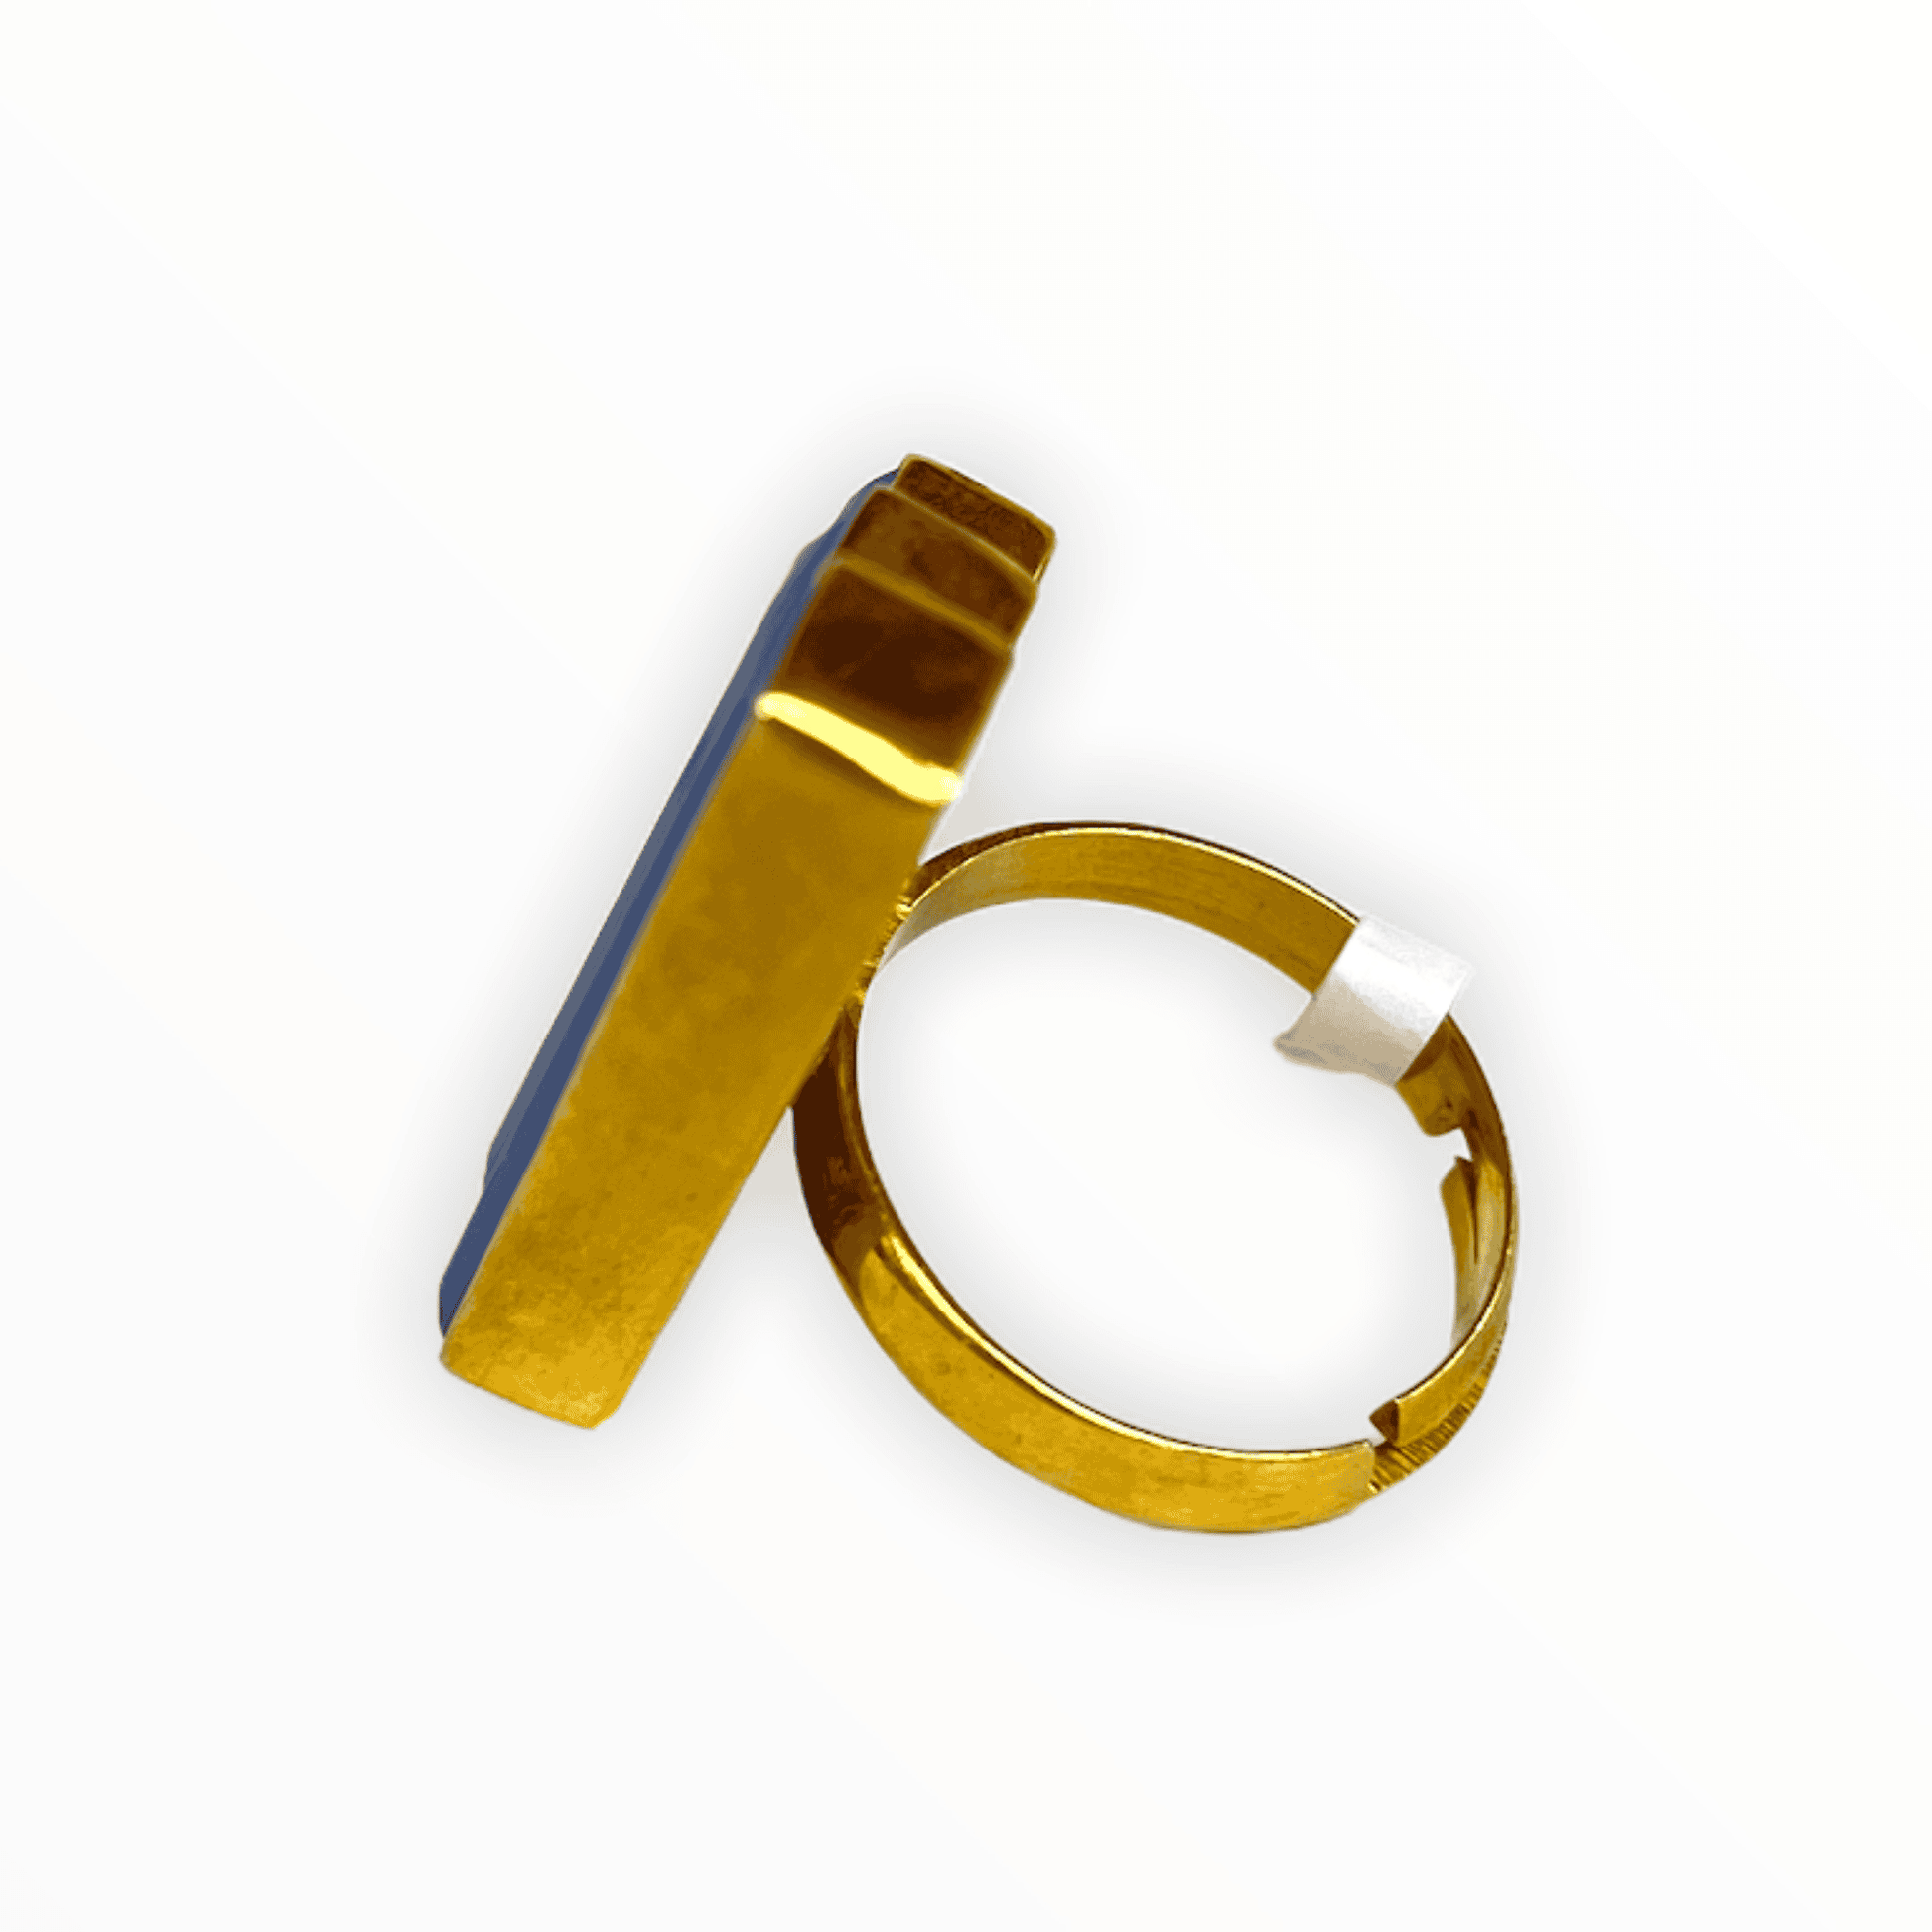 Side view of The Smokey Quartz Tasha Adjustable ADMK Ring